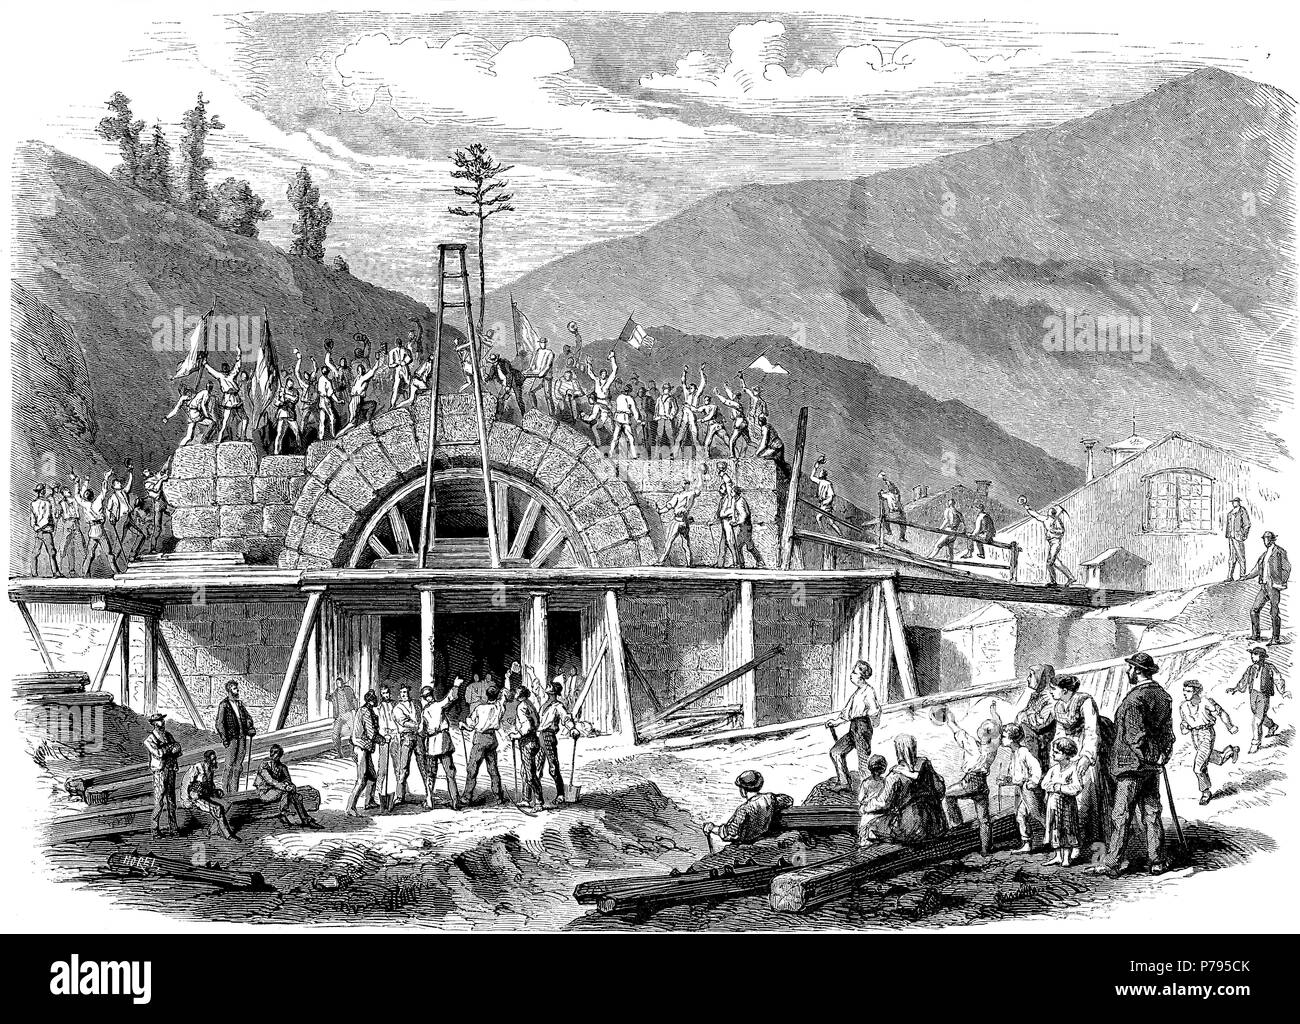 Apertura de los Alpes, colocación de la última piedra en el túnel de entrada de Mont Cenís entre Francia e Italia, el 18 de agosto de 1871. Grabado de época. Stock Photo